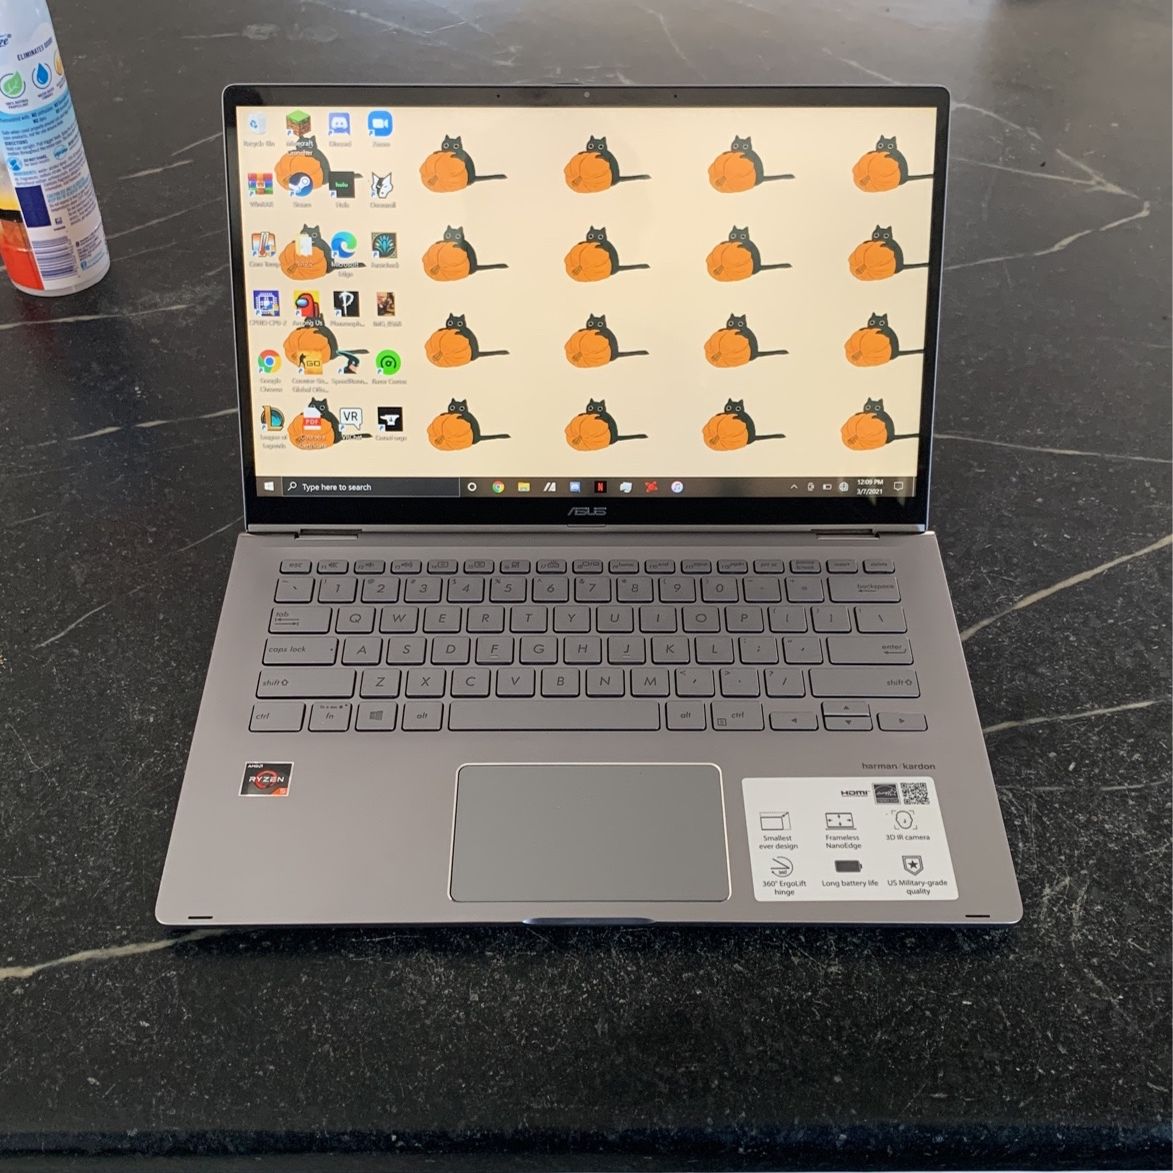 Asus Zenbook Flip Touch Screen Notebook Laptop